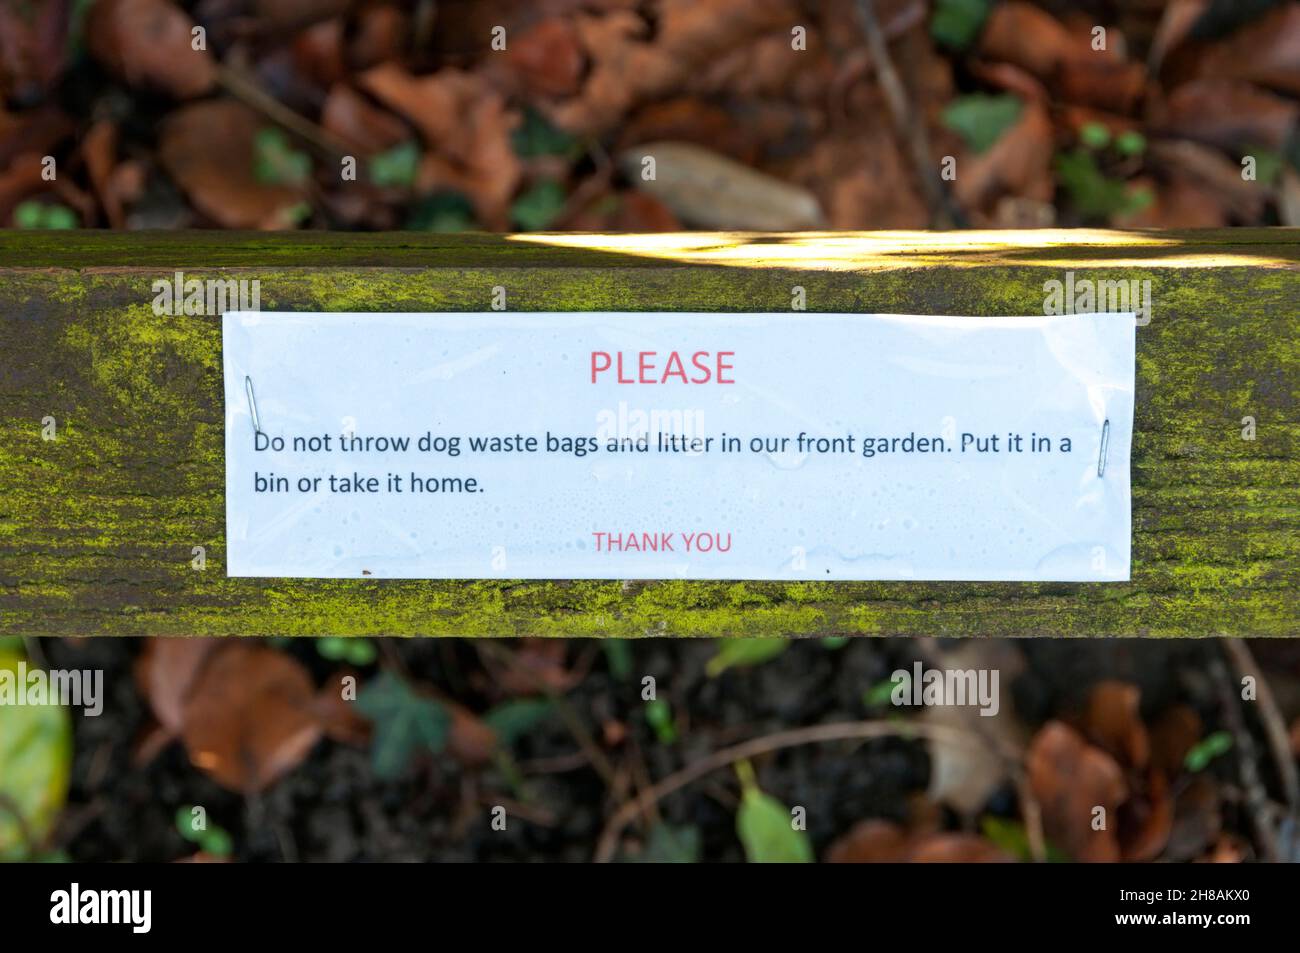 Un messaggio inchiodati ad una recinzione chiede che la gente non getti la lettiera ed i sacchetti dei rifiuti del cane nel giardino anteriore. Foto Stock